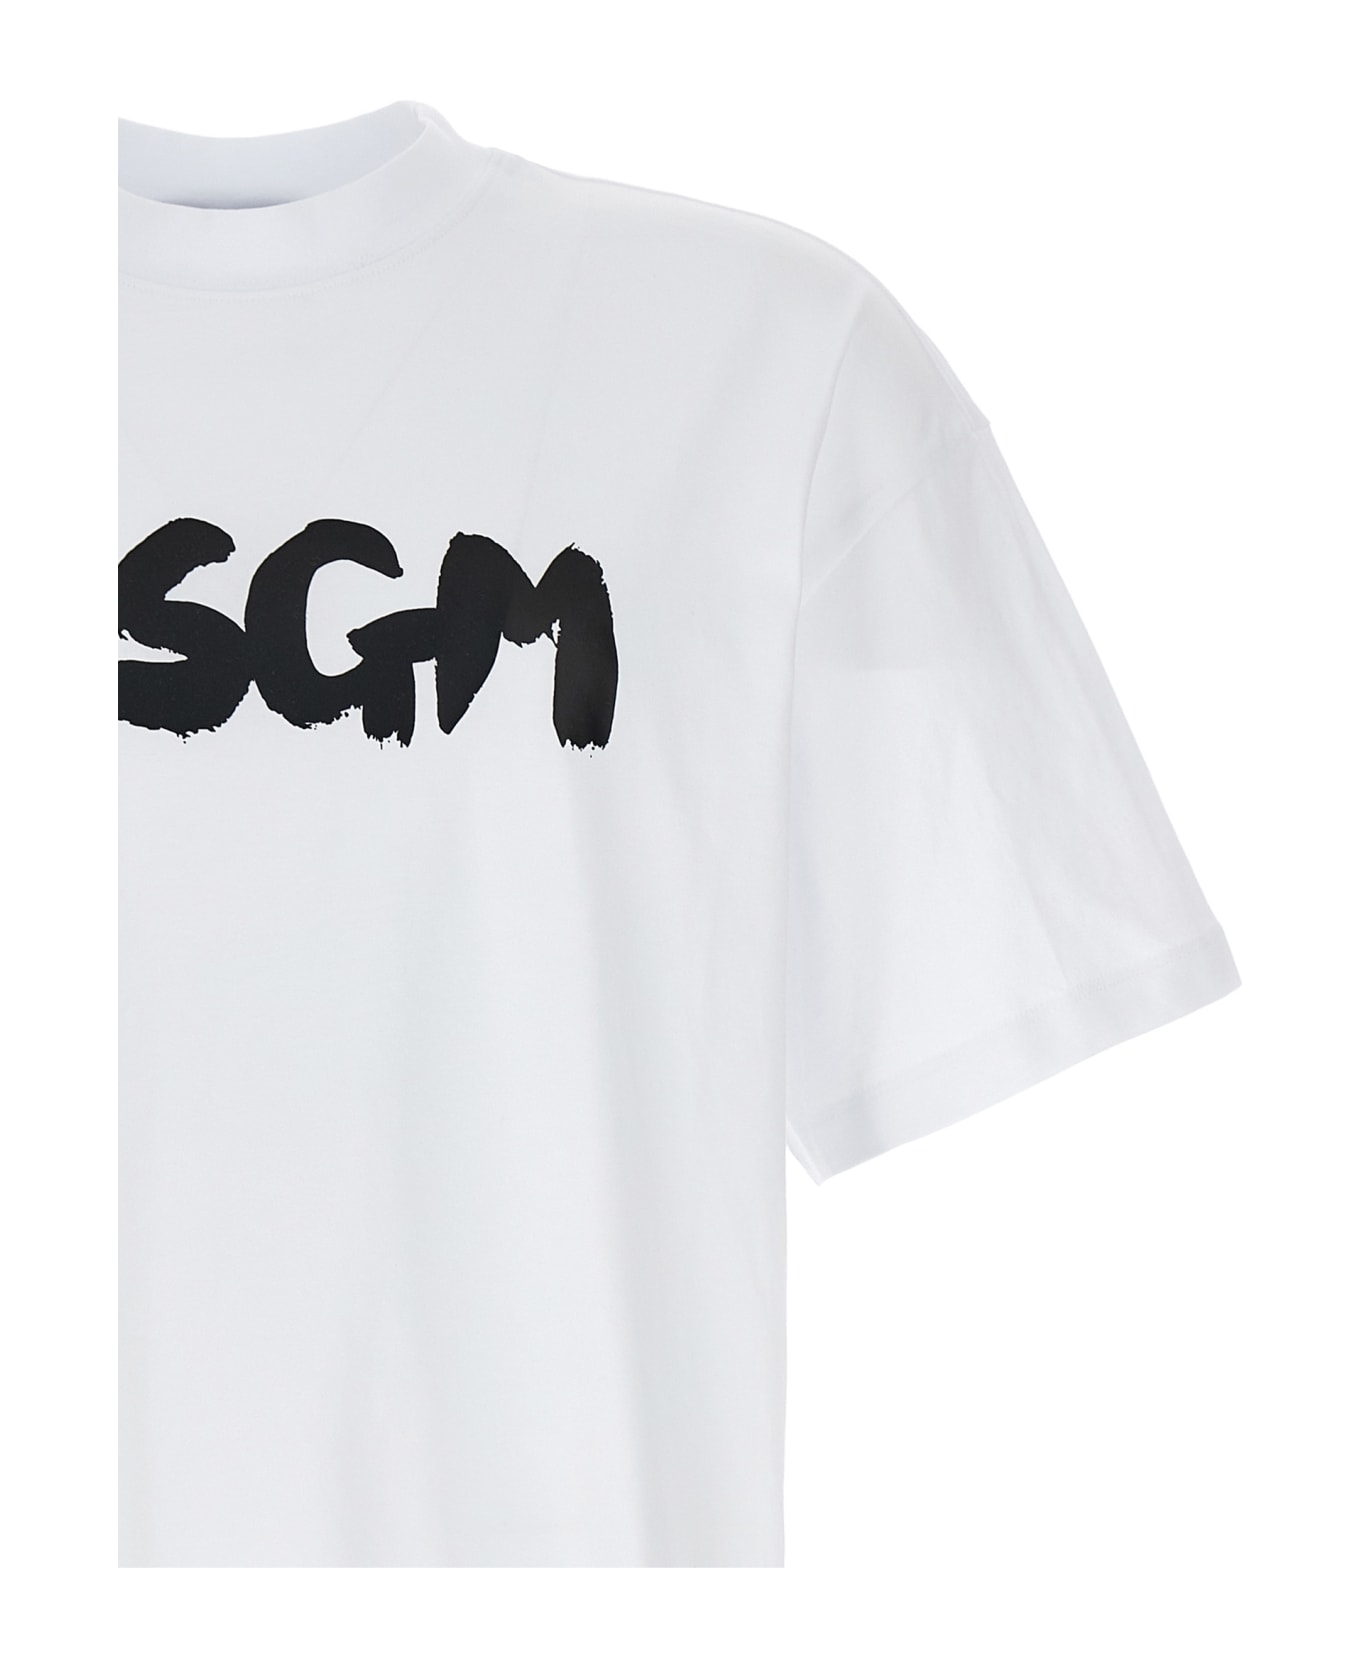 MSGM Logo T-shirt - White シャツ